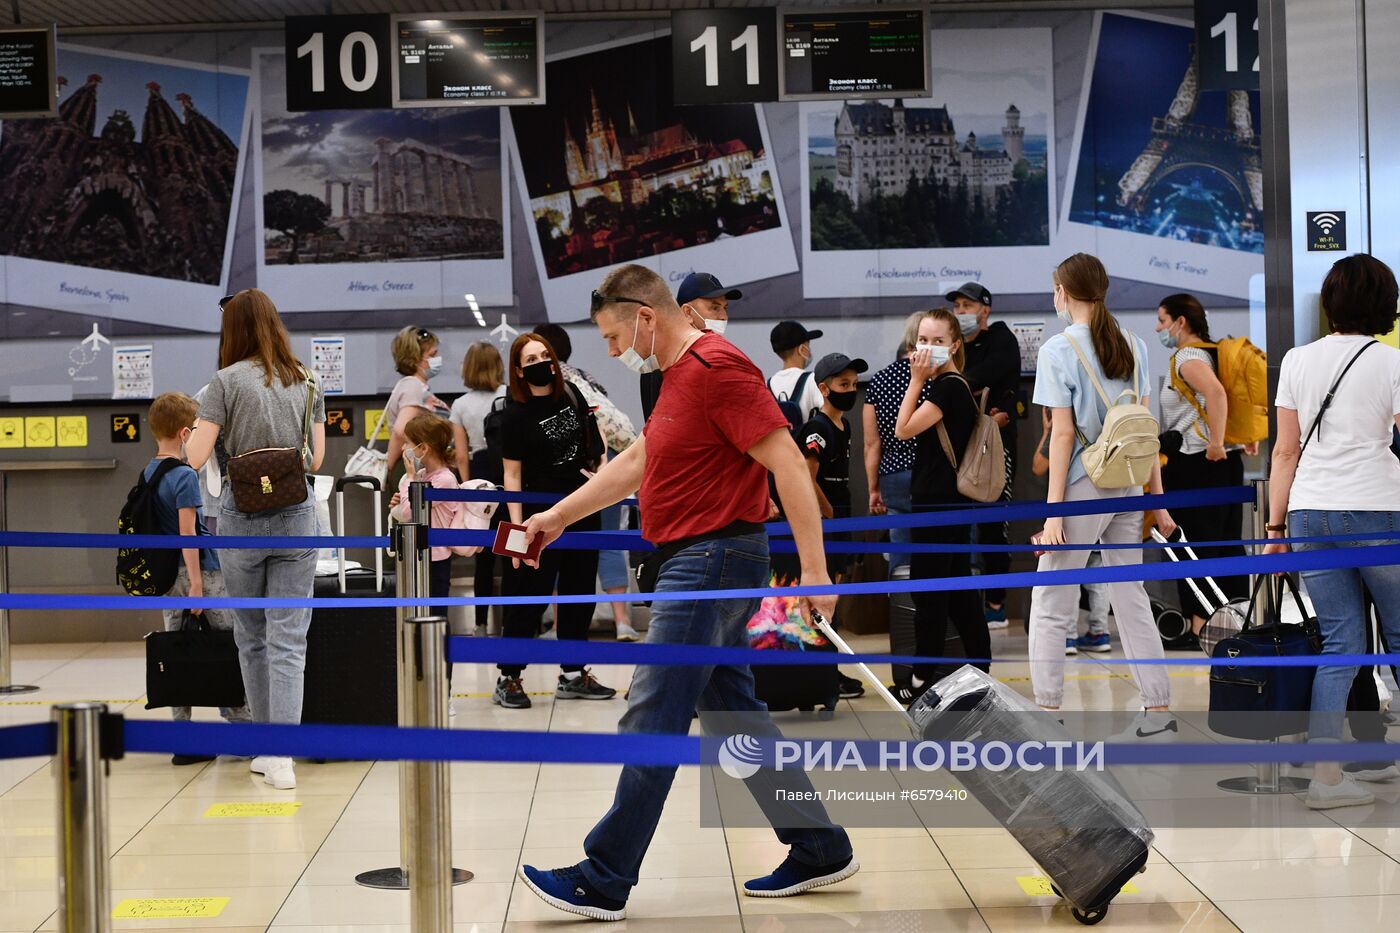 Возобновление авиасообщения между Россией и Турцией